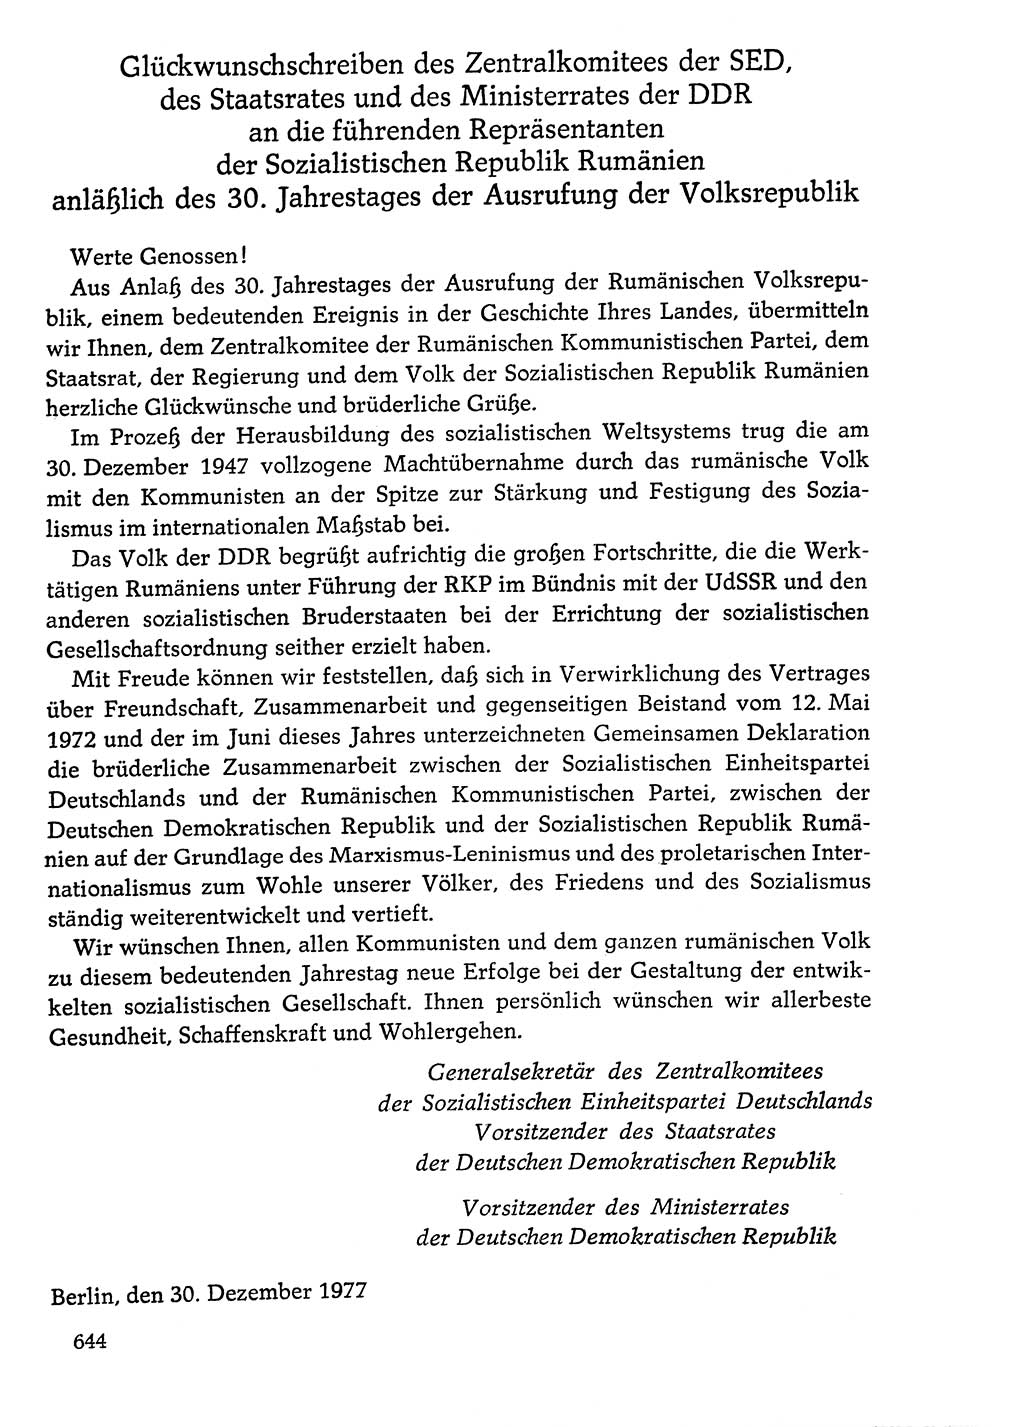 Dokumente der Sozialistischen Einheitspartei Deutschlands (SED) [Deutsche Demokratische Republik (DDR)] 1976-1977, Seite 644 (Dok. SED DDR 1976-1977, S. 644)